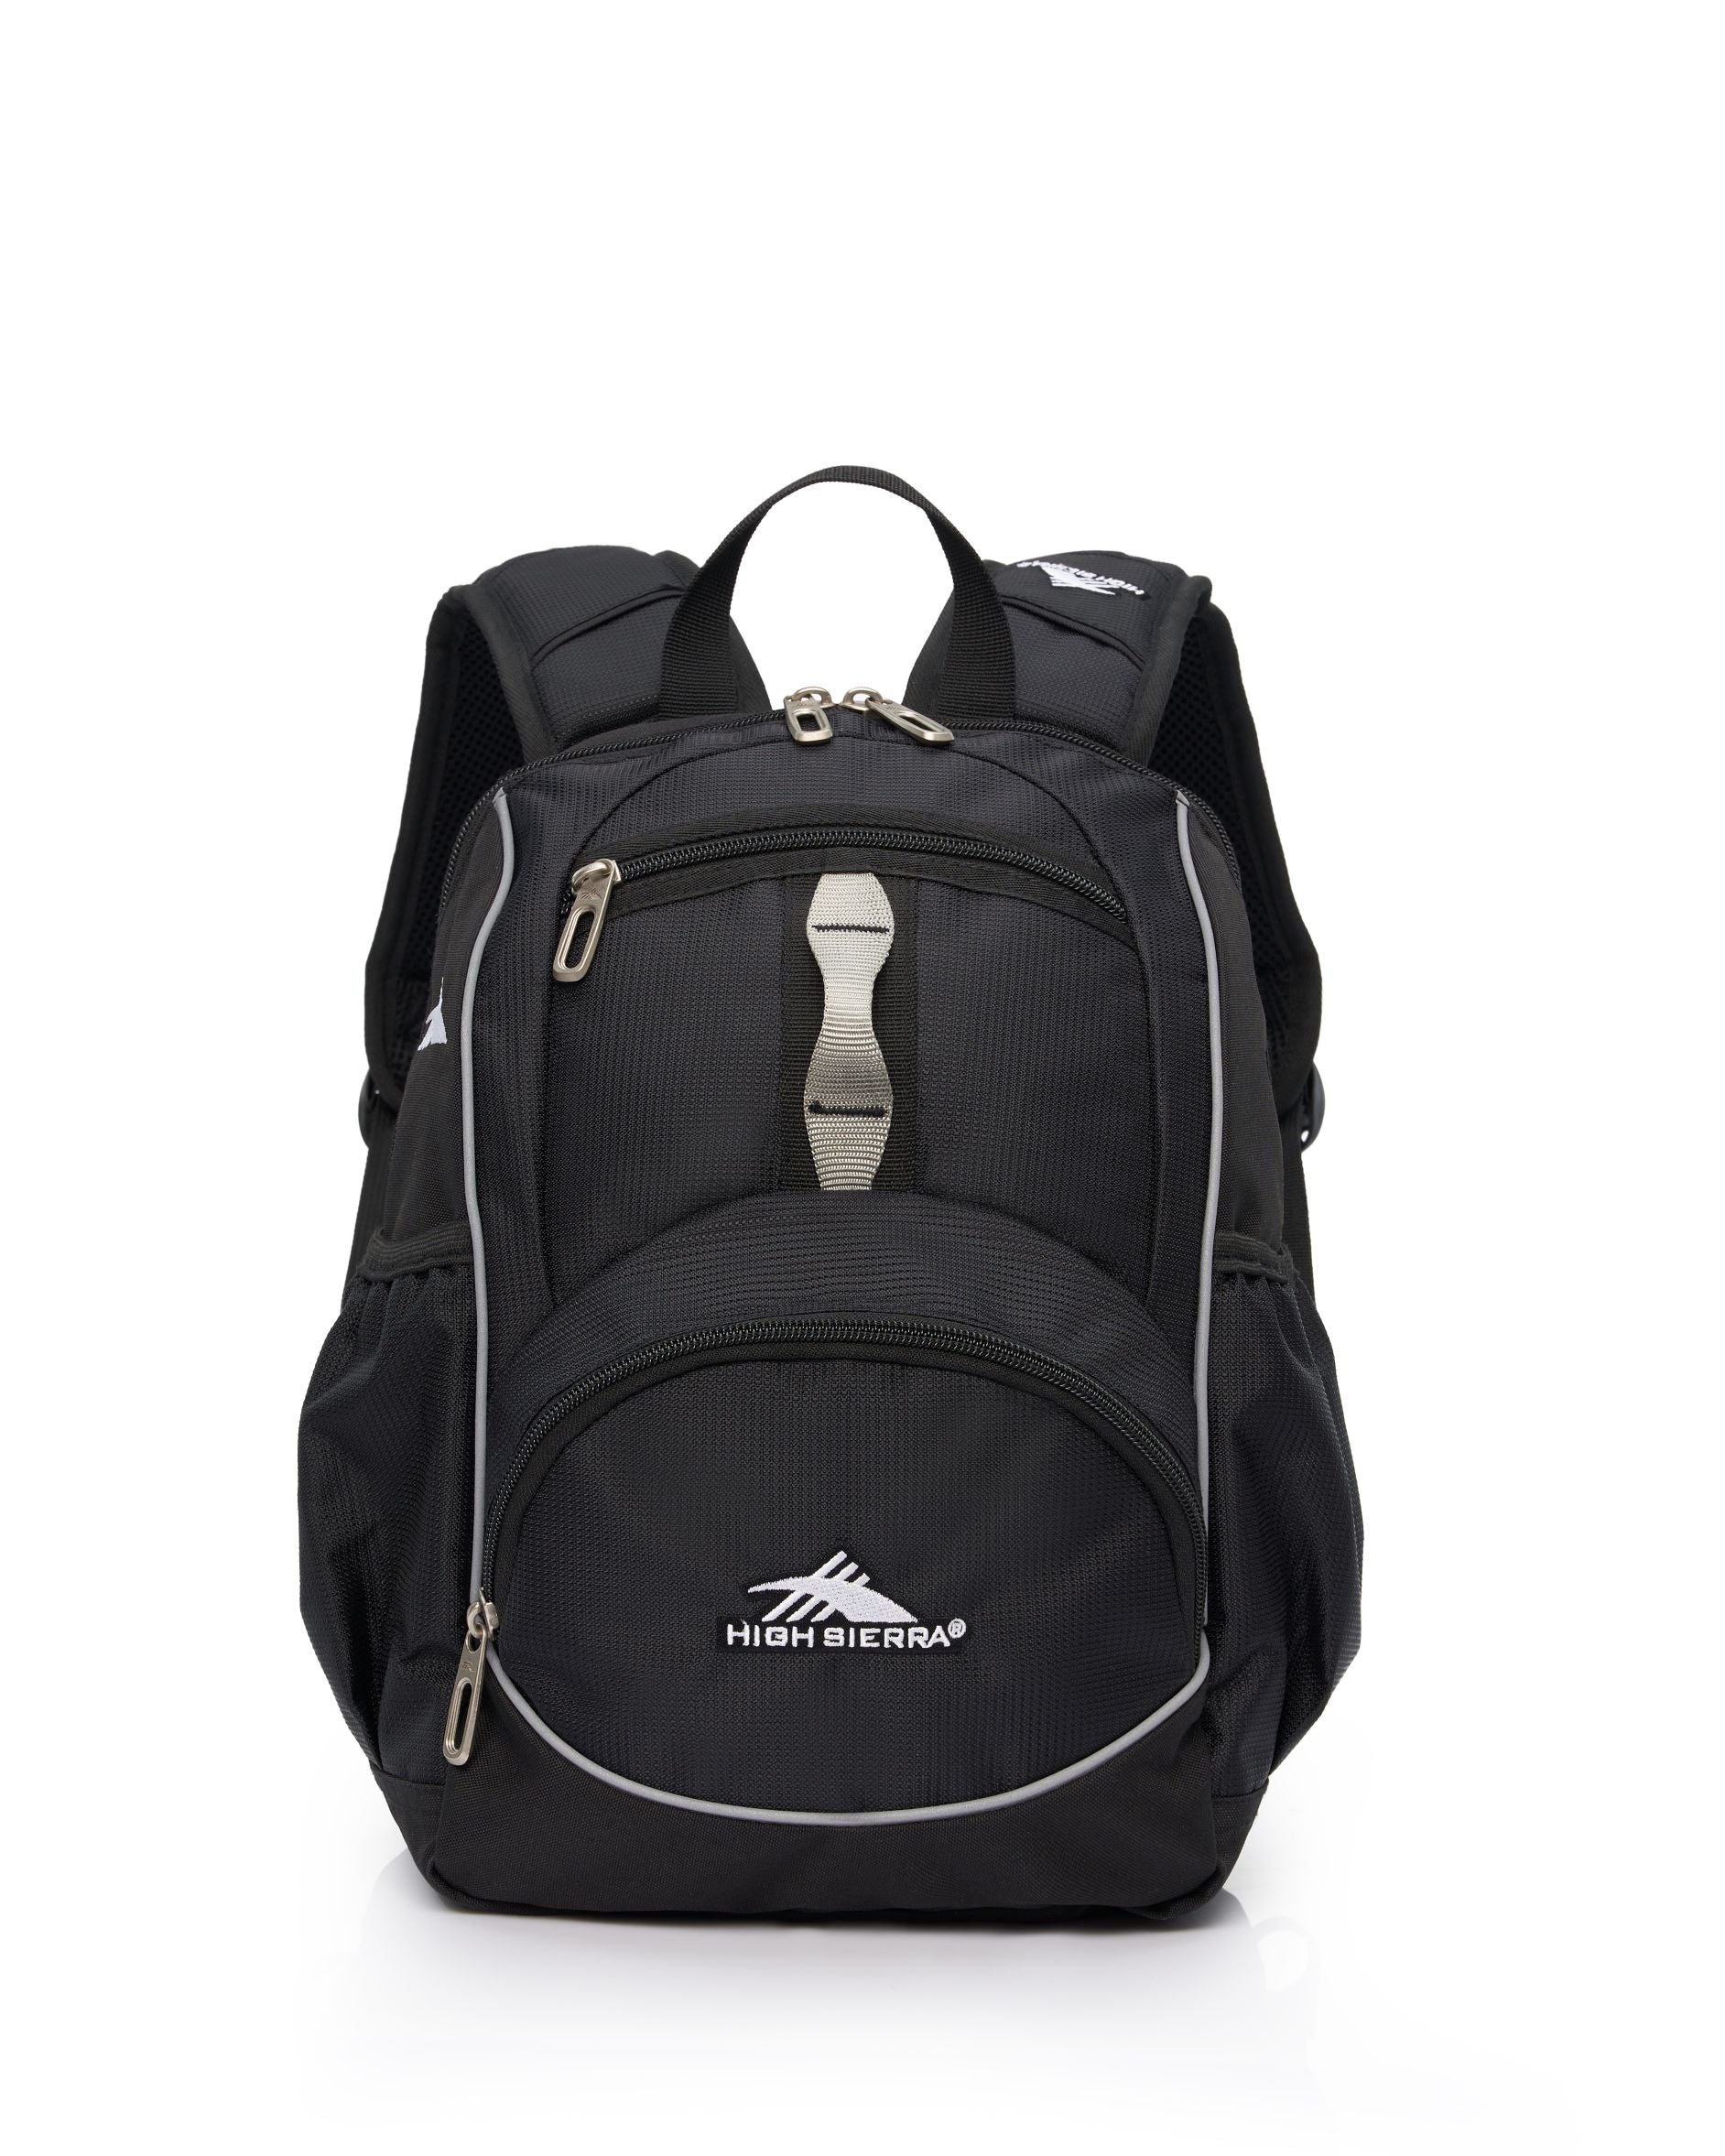 High Sierra - Mini Backpack 2.0 - Black/Silver-2